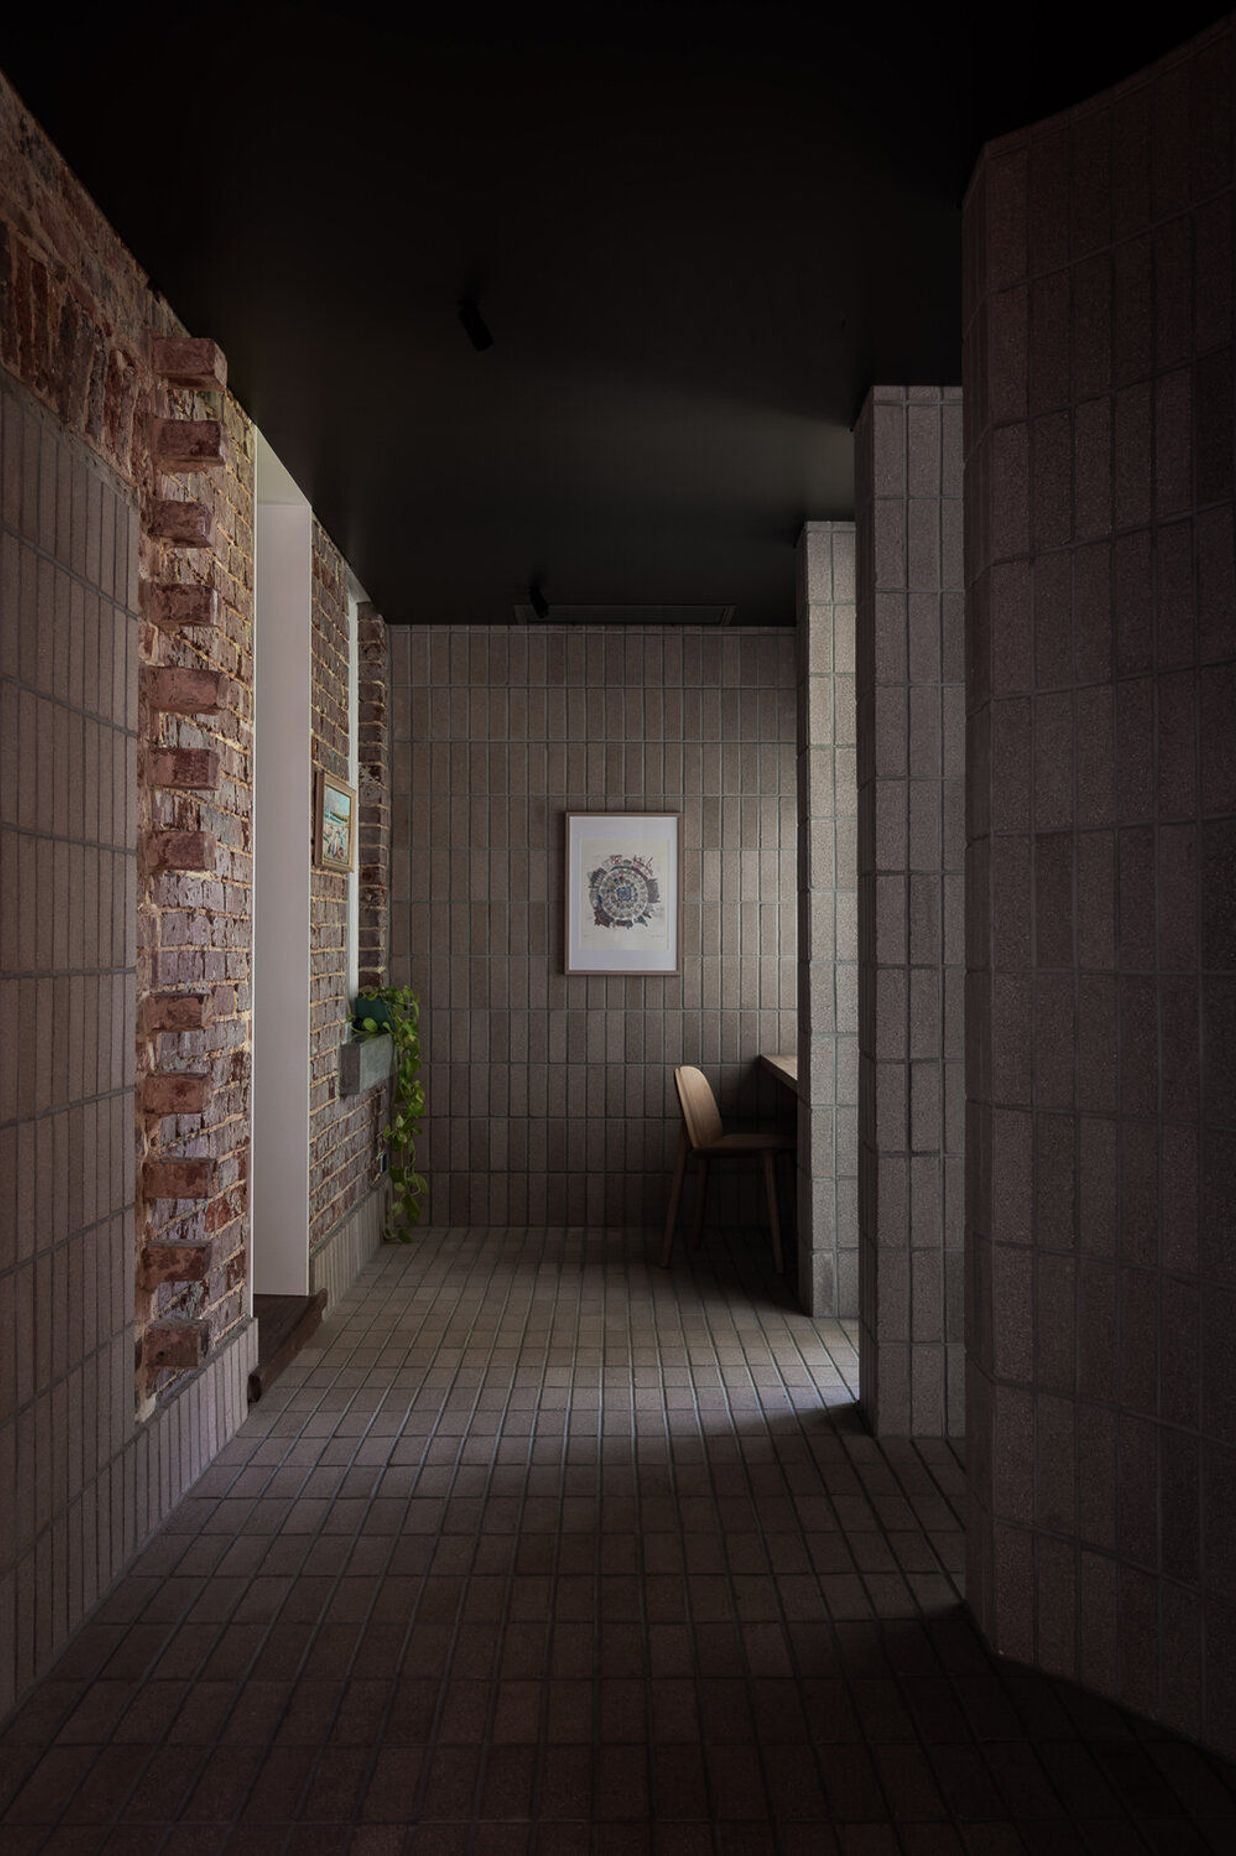 Exposed: Spectacular Brick and Block Interiors